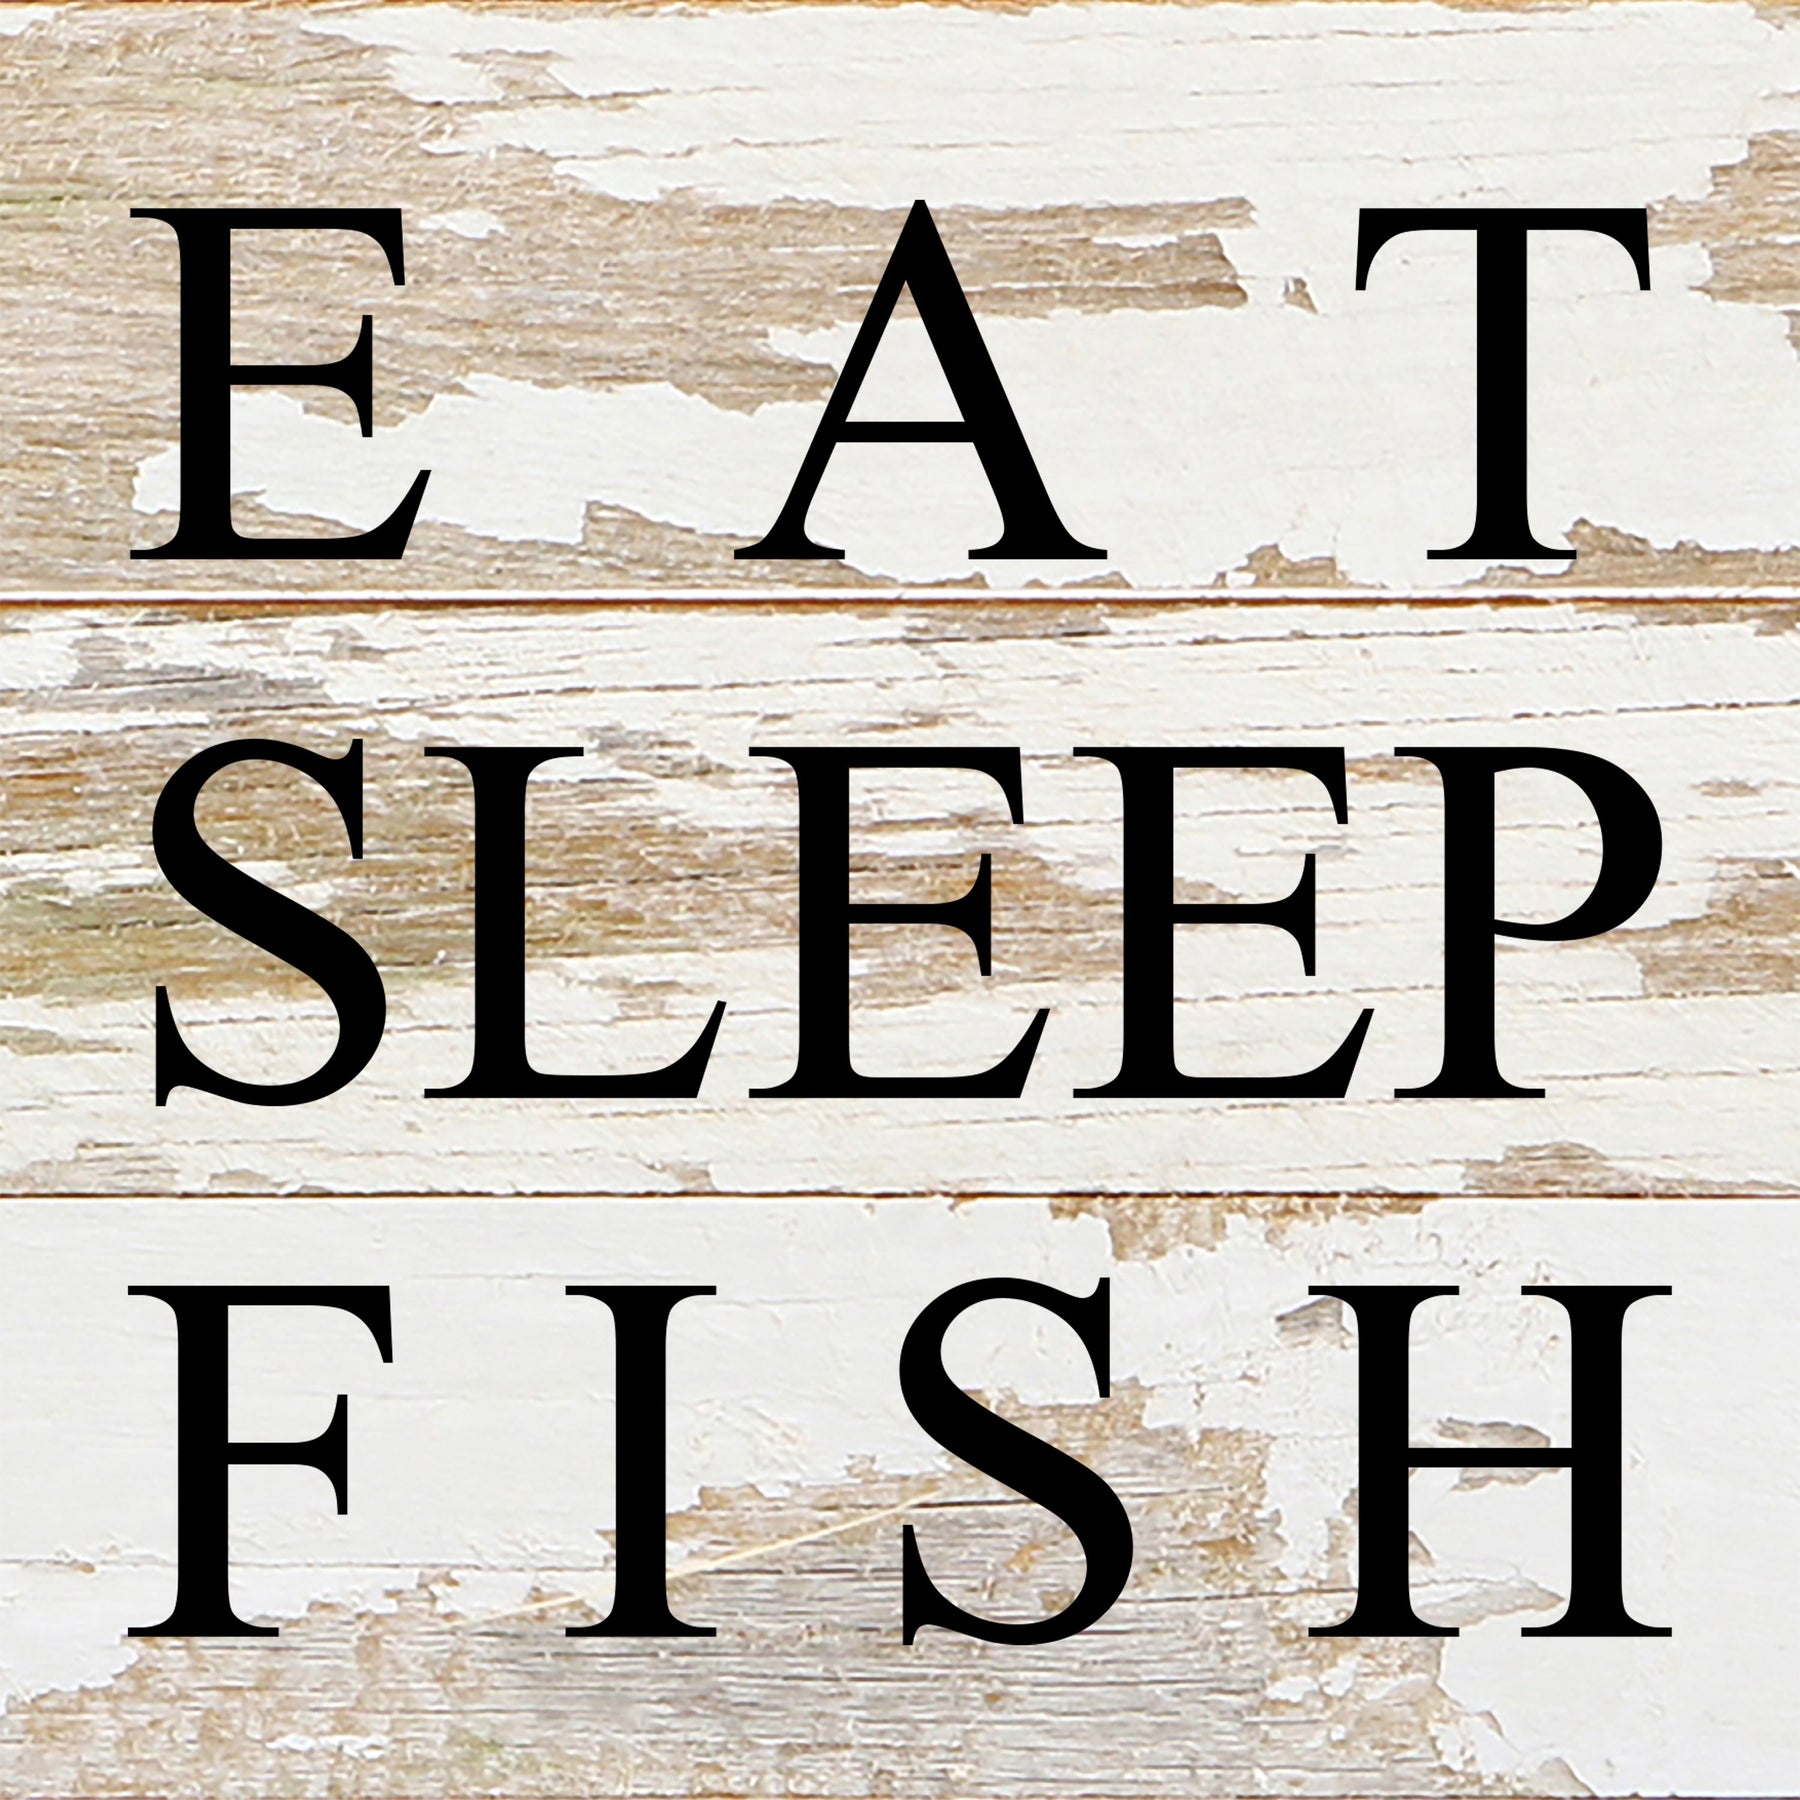 Eat, sleep, fish / 6"x6" Reclaimed Wood Sign